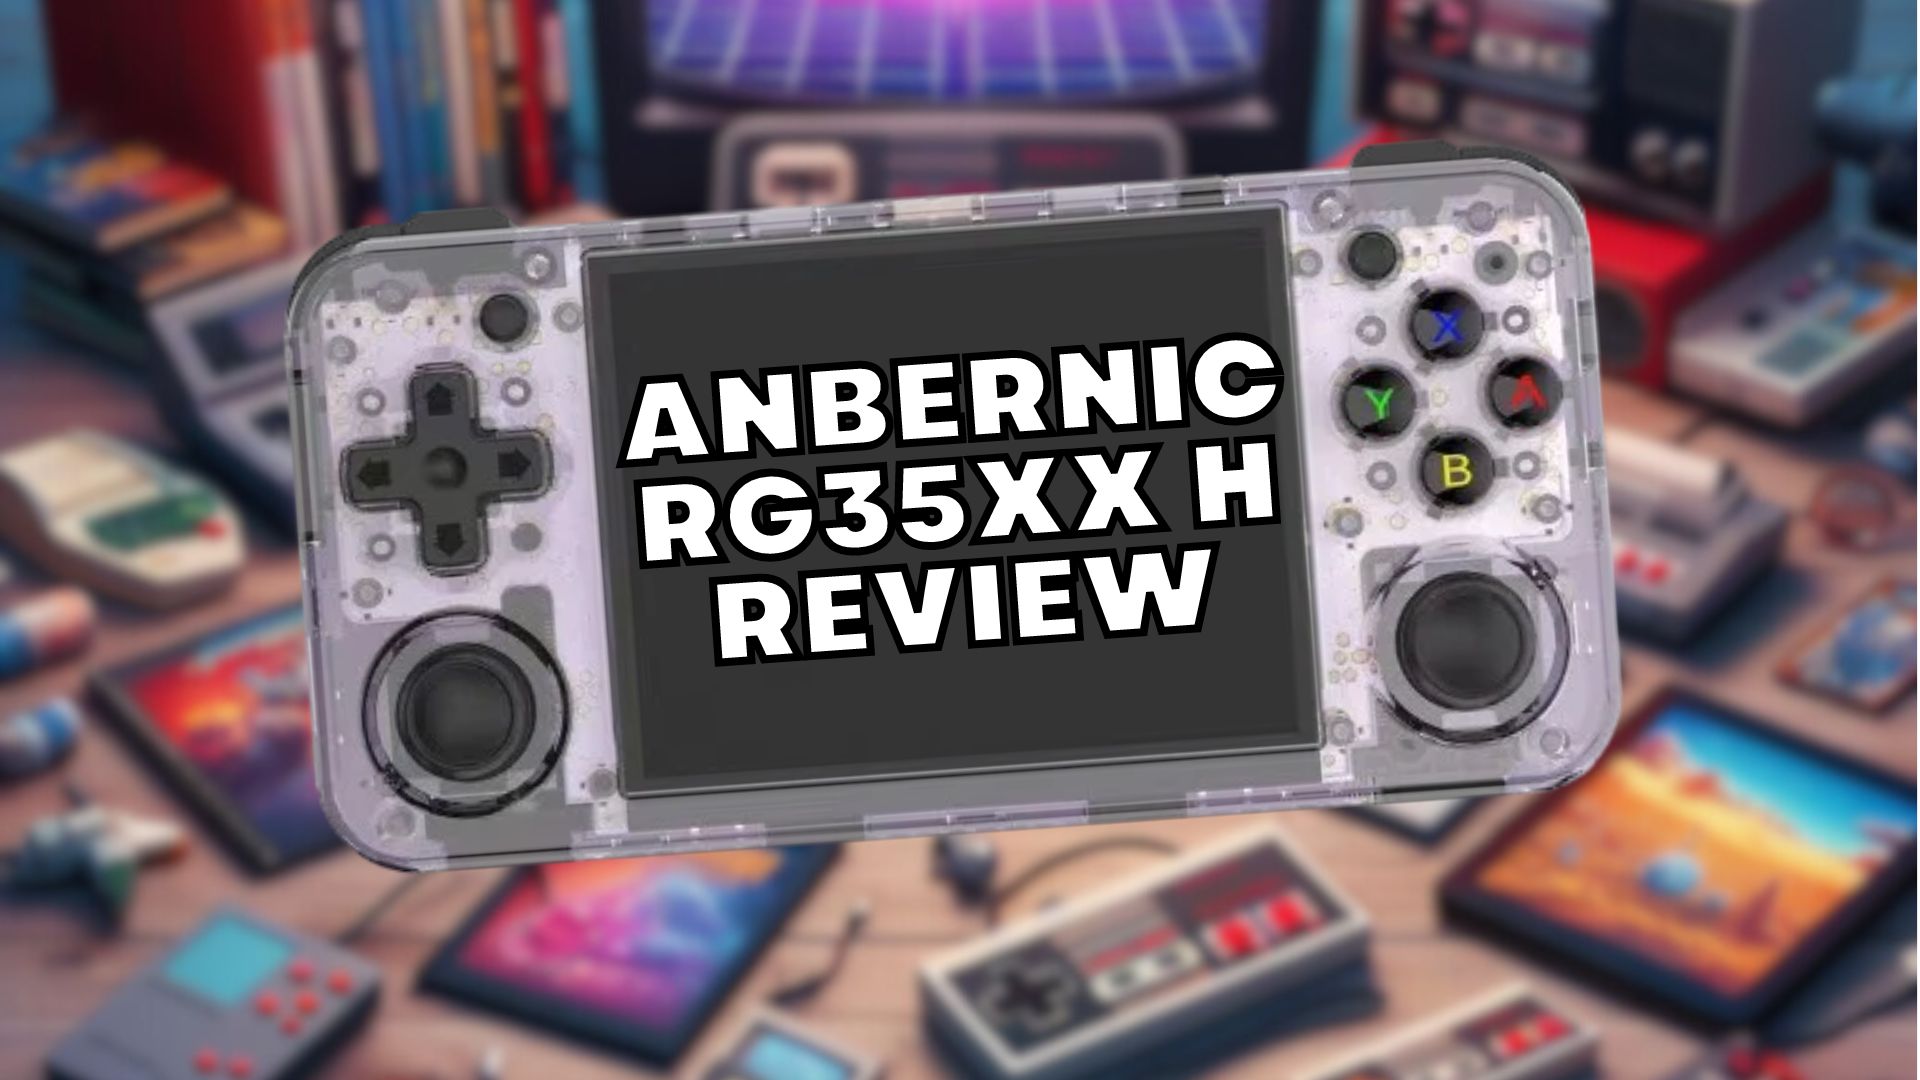 Anbernic RG35XX H - Gran portátil de juegos retro económico